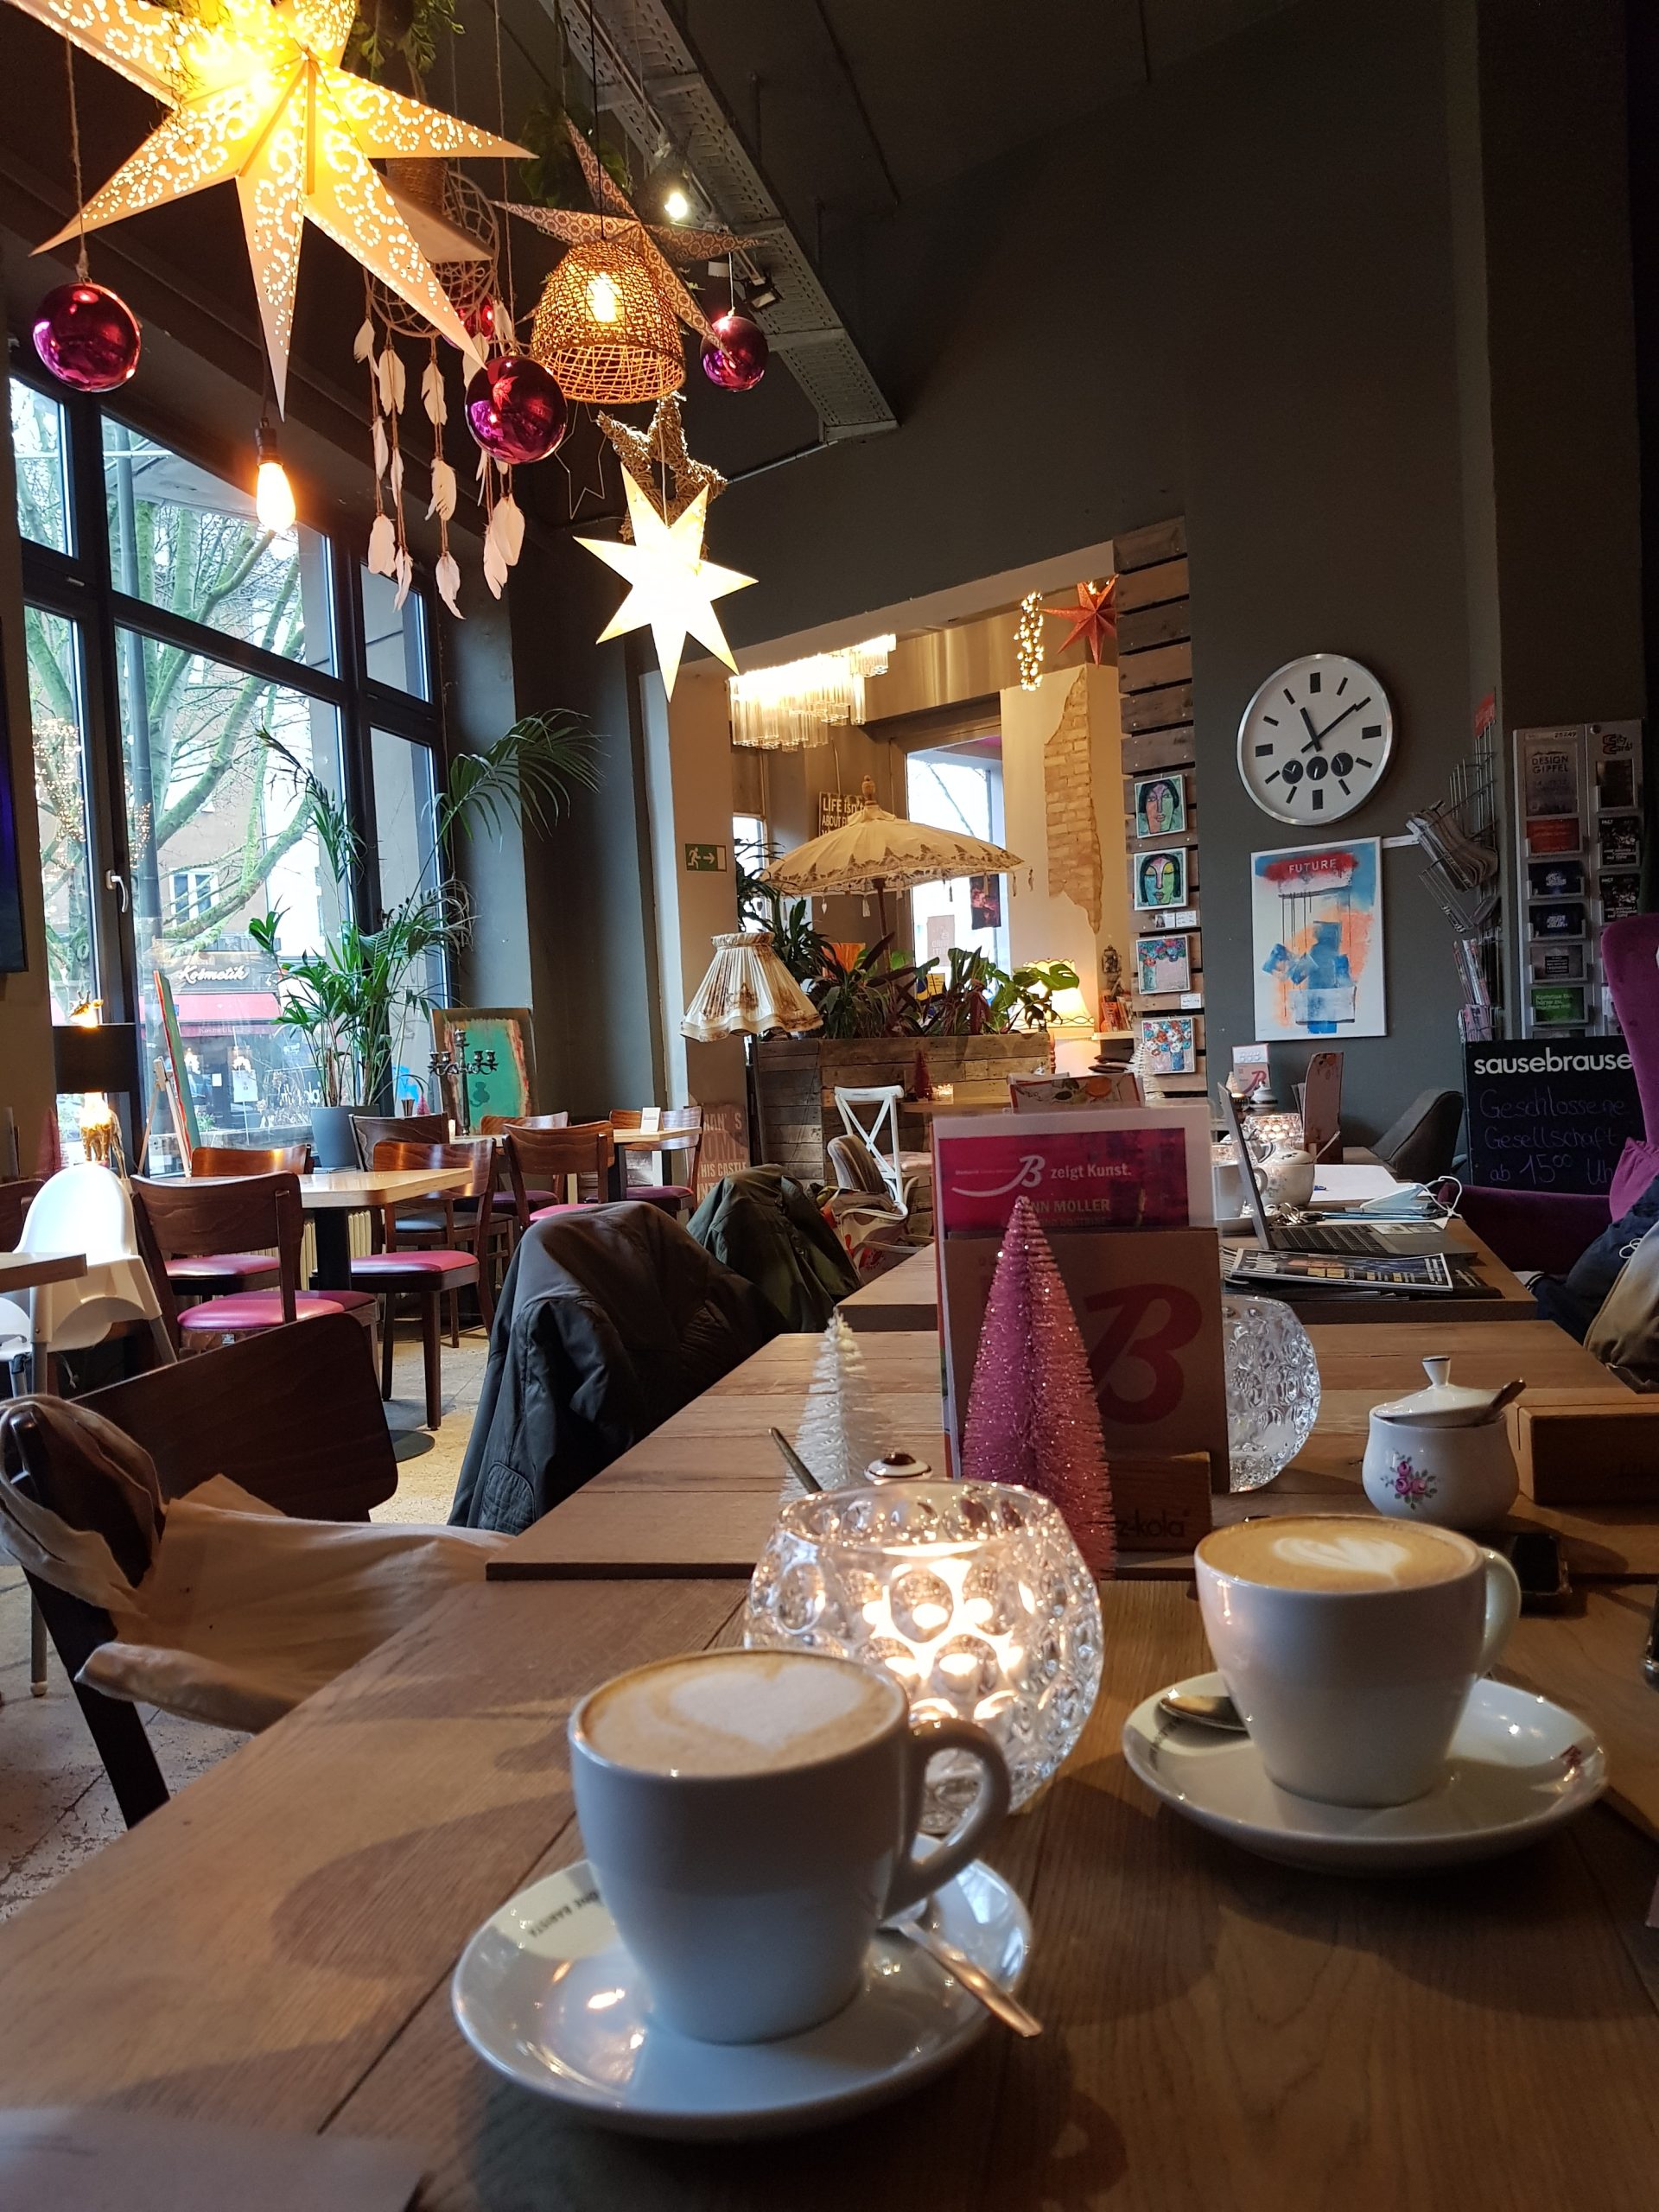 Das Café Bismarck im Kaiserstraßenviertel in Dortmund